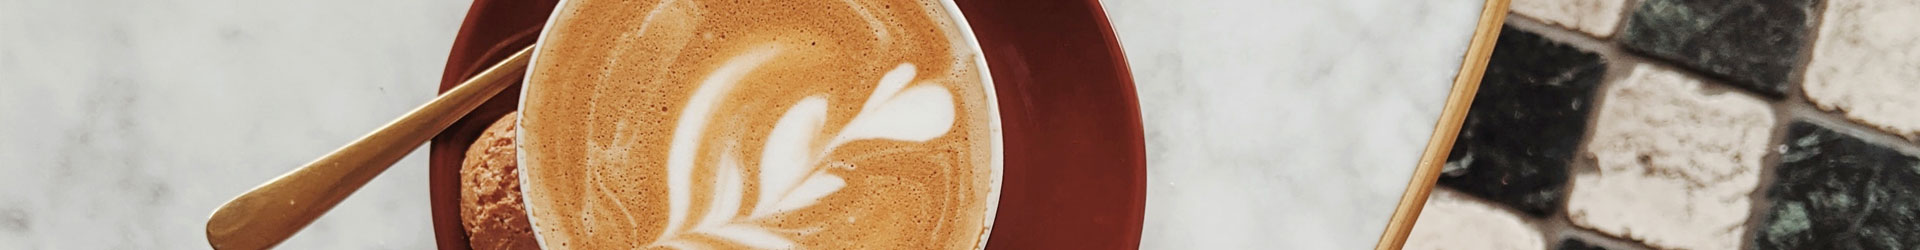 Latte-Art-Herz Cappuccino in Kaffeetasse auf roter Untertasse mit Keks und Teelöffel